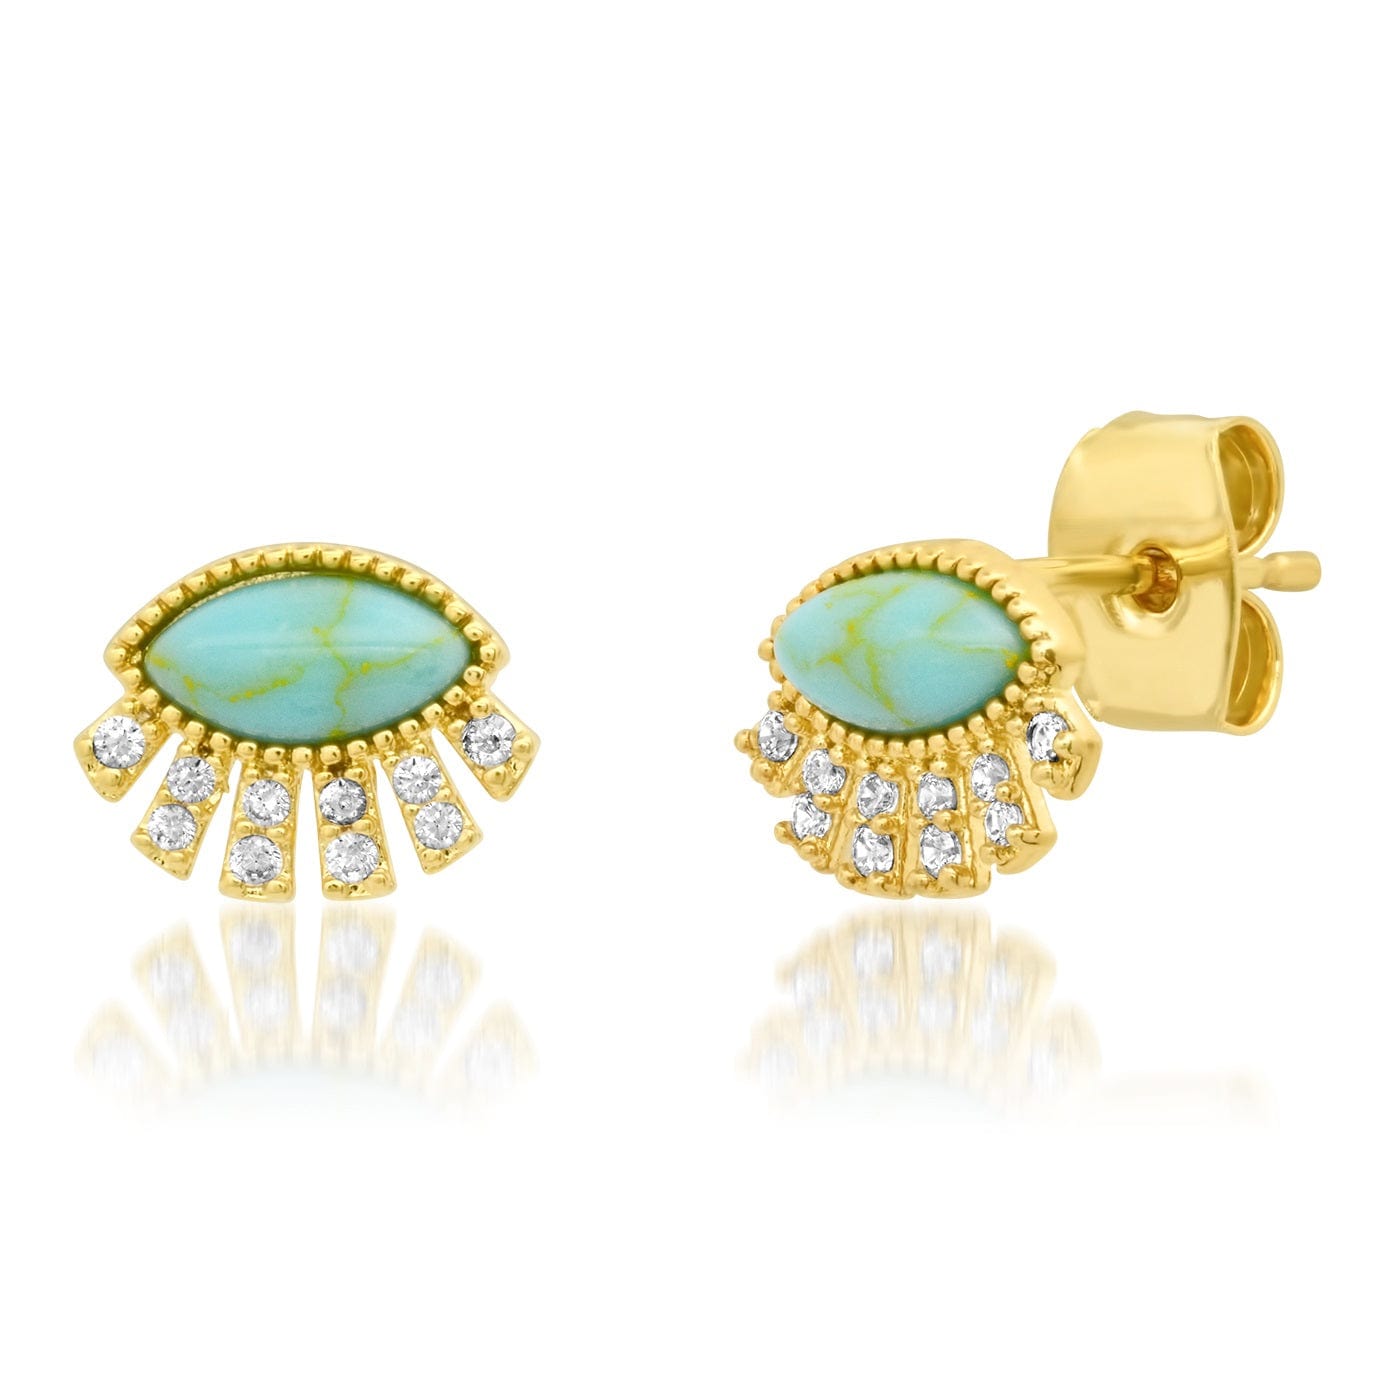 TAI JEWELRY Earrings Turquoise Twinkling Eye Earrings